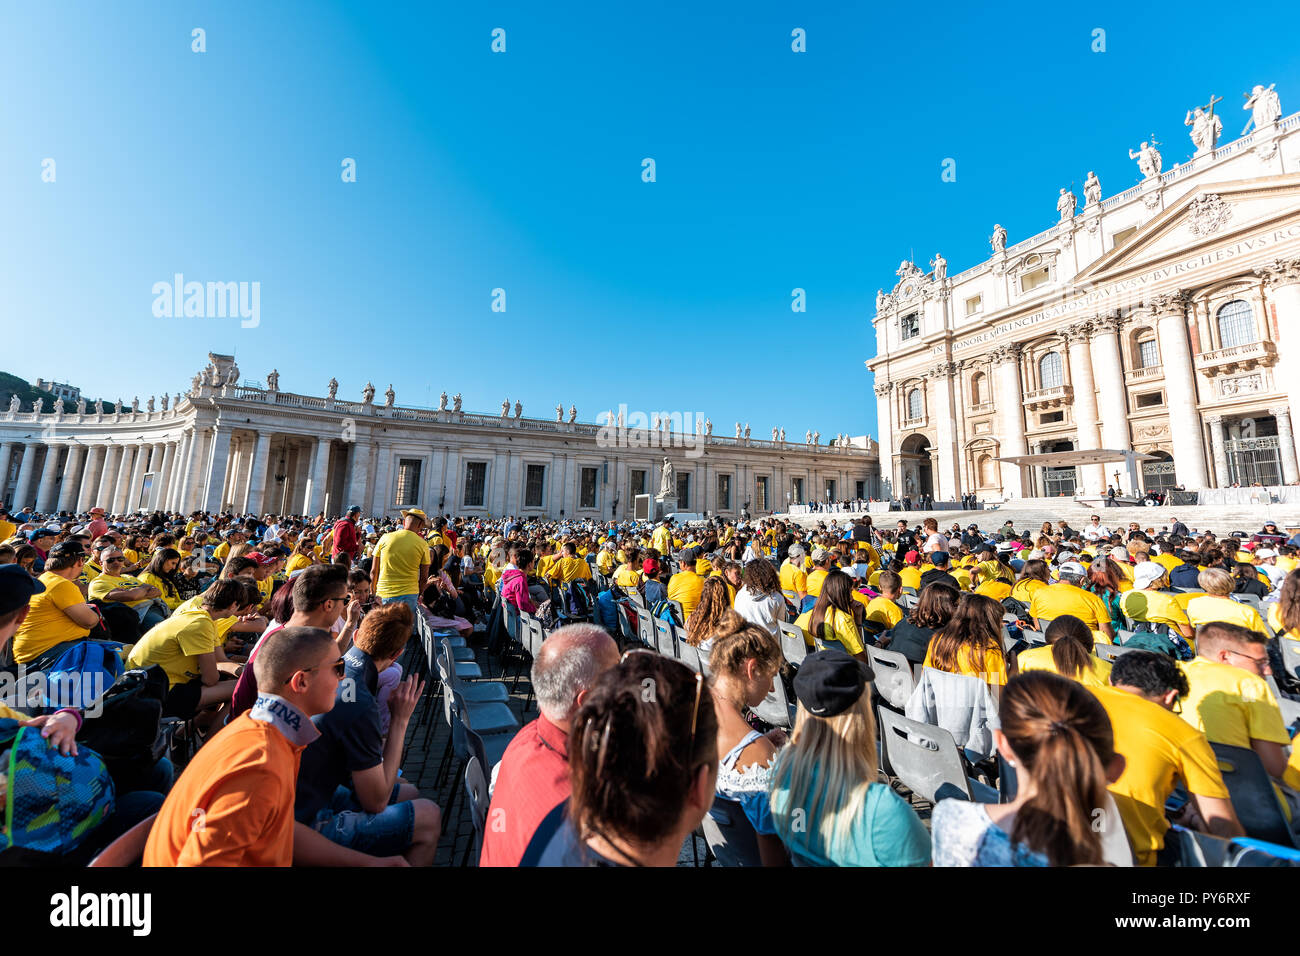 Cité du Vatican, Italie - 5 septembre 2018 : Beaucoup de gens assis dans l'église de St Peter's Basilica Square pendant la messe, l'audience papale sur sunny day, foule Banque D'Images